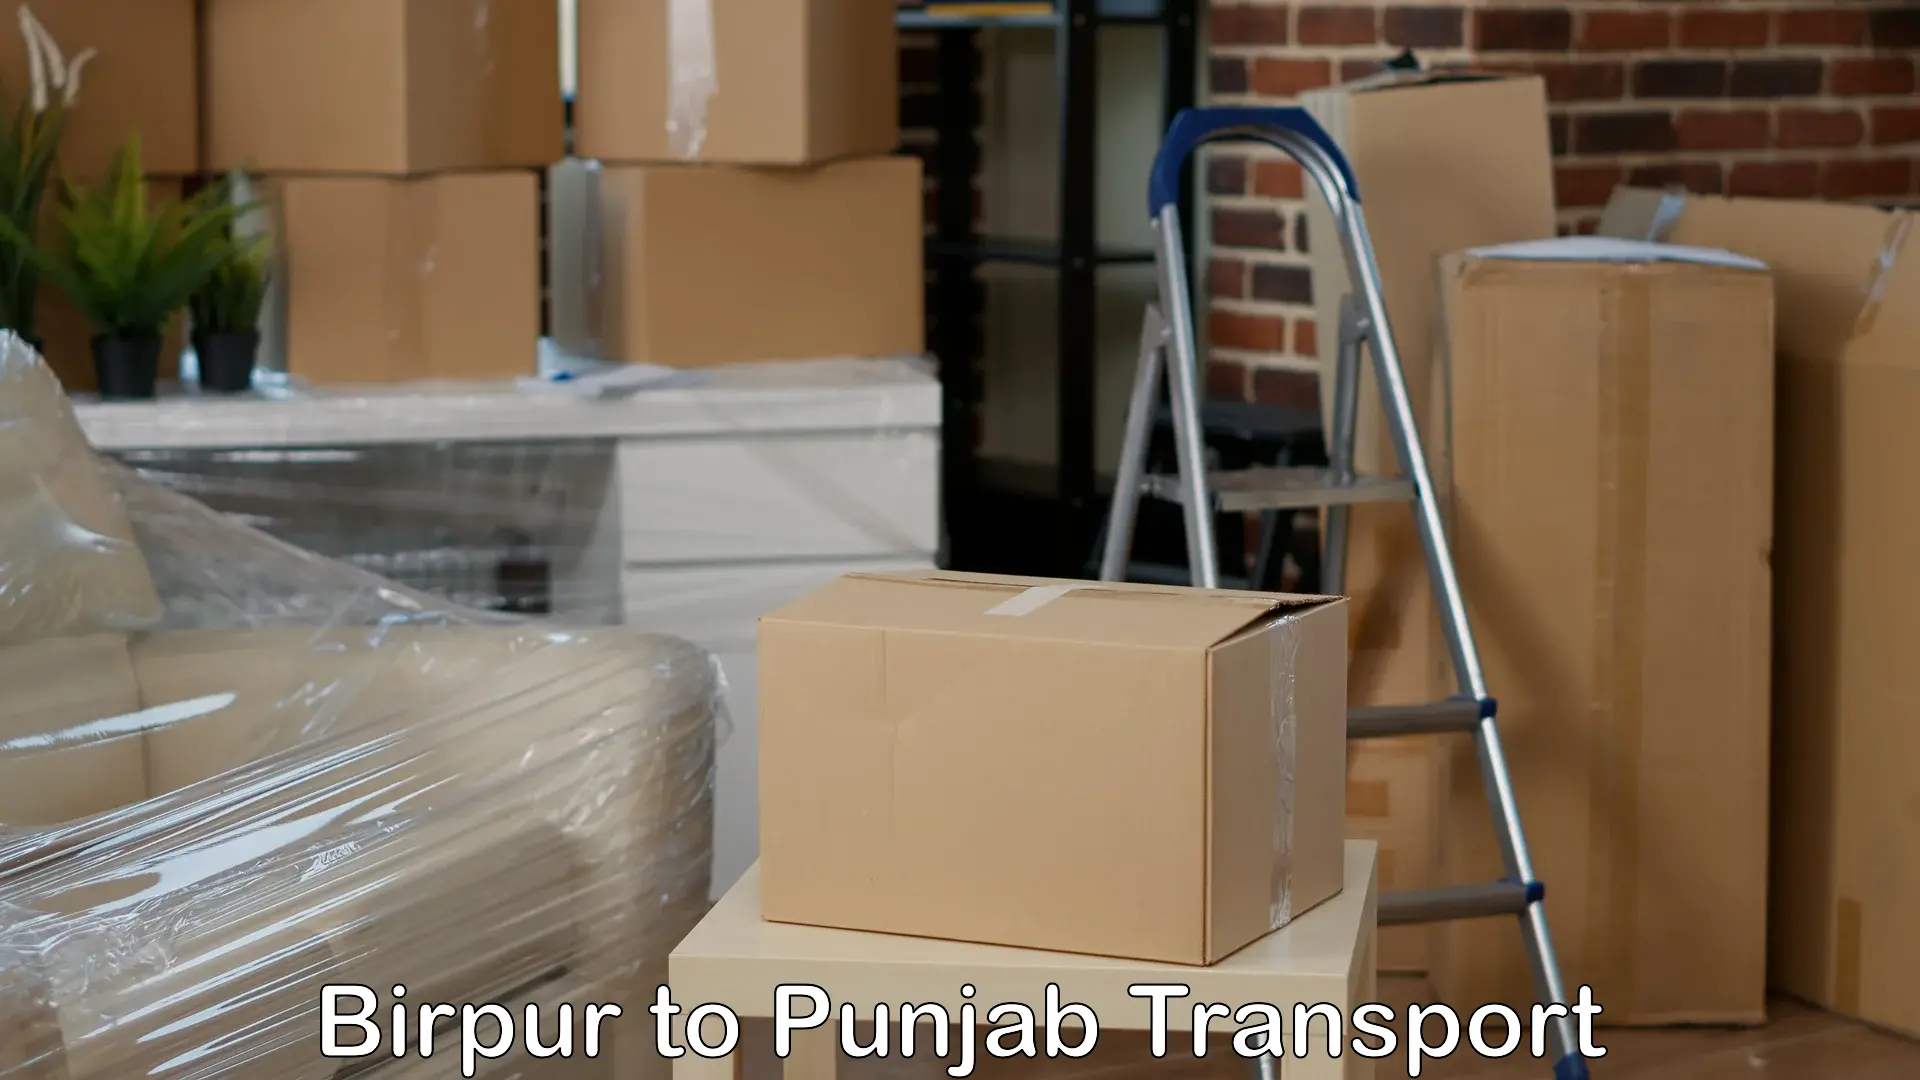 Bike shipping service Birpur to Amritsar